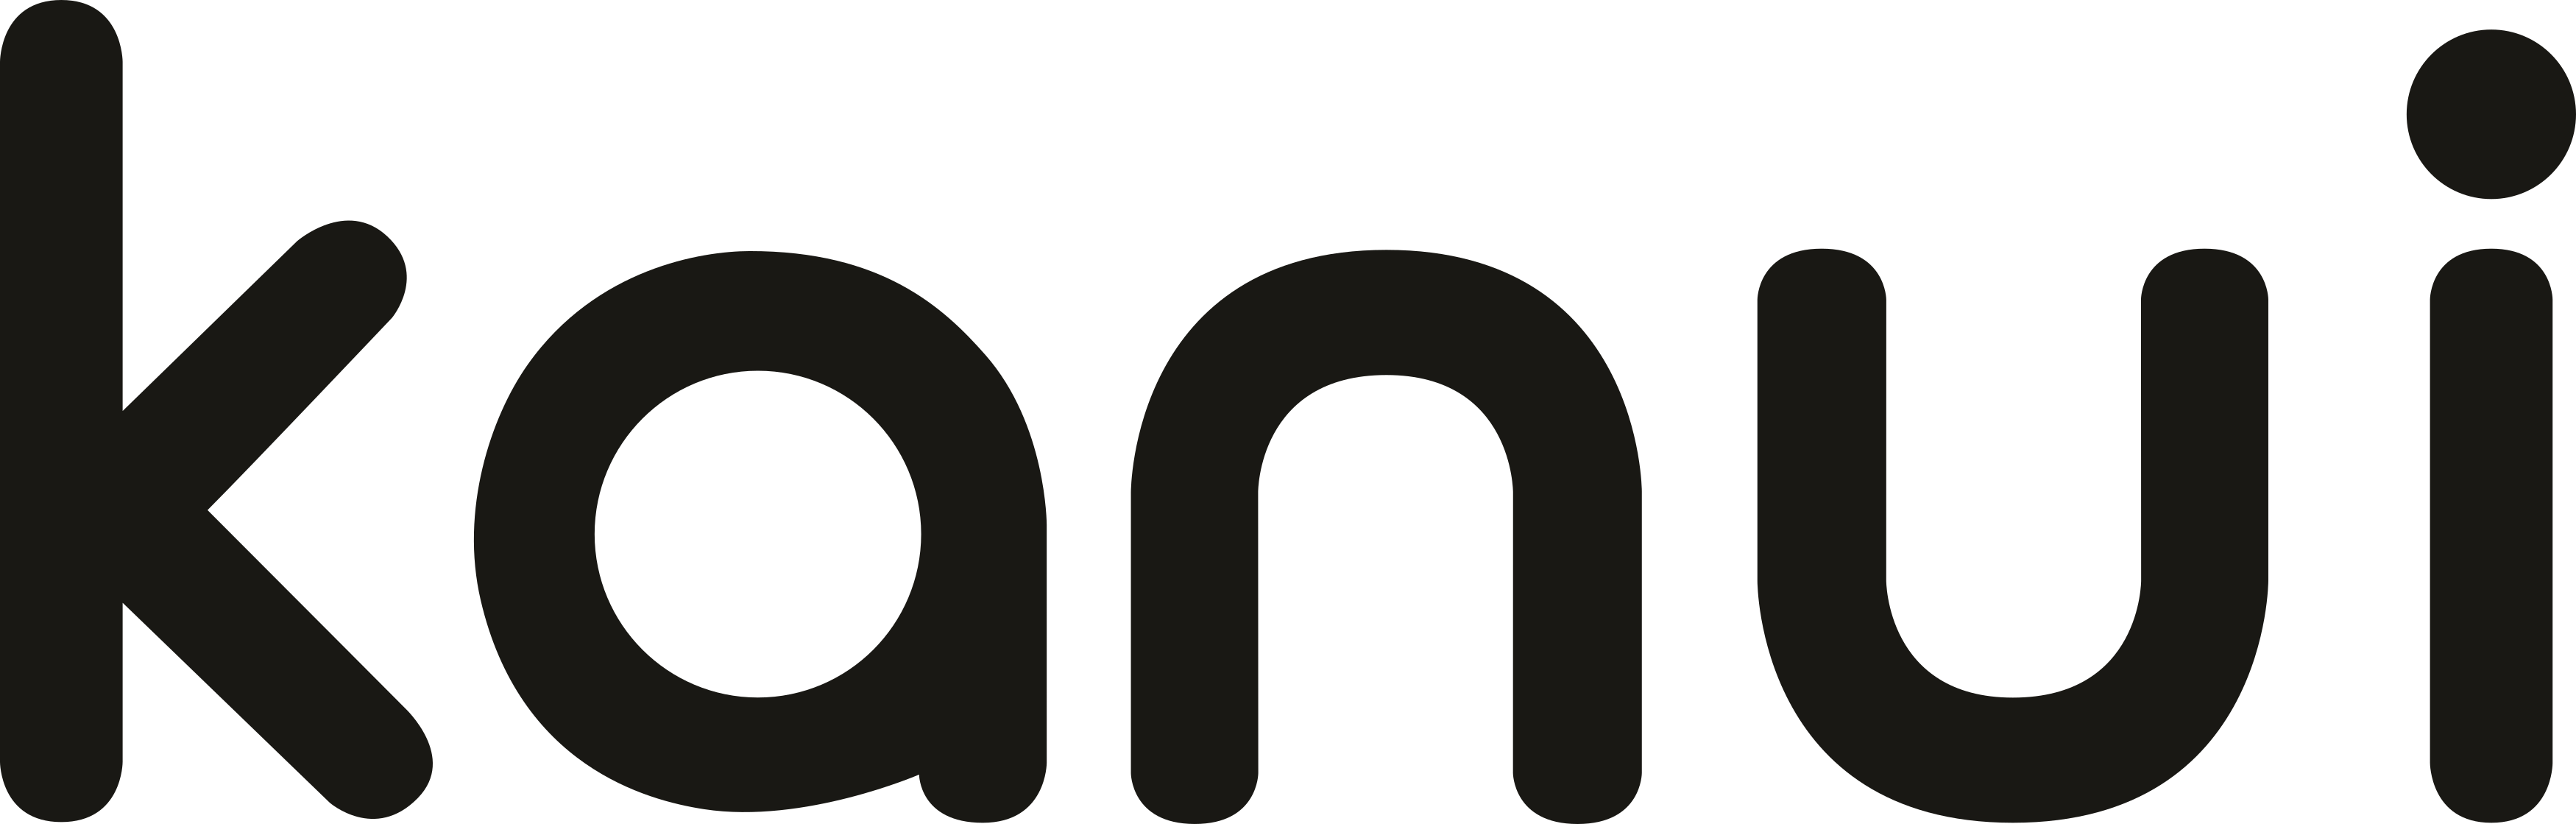 Kanui Logo.